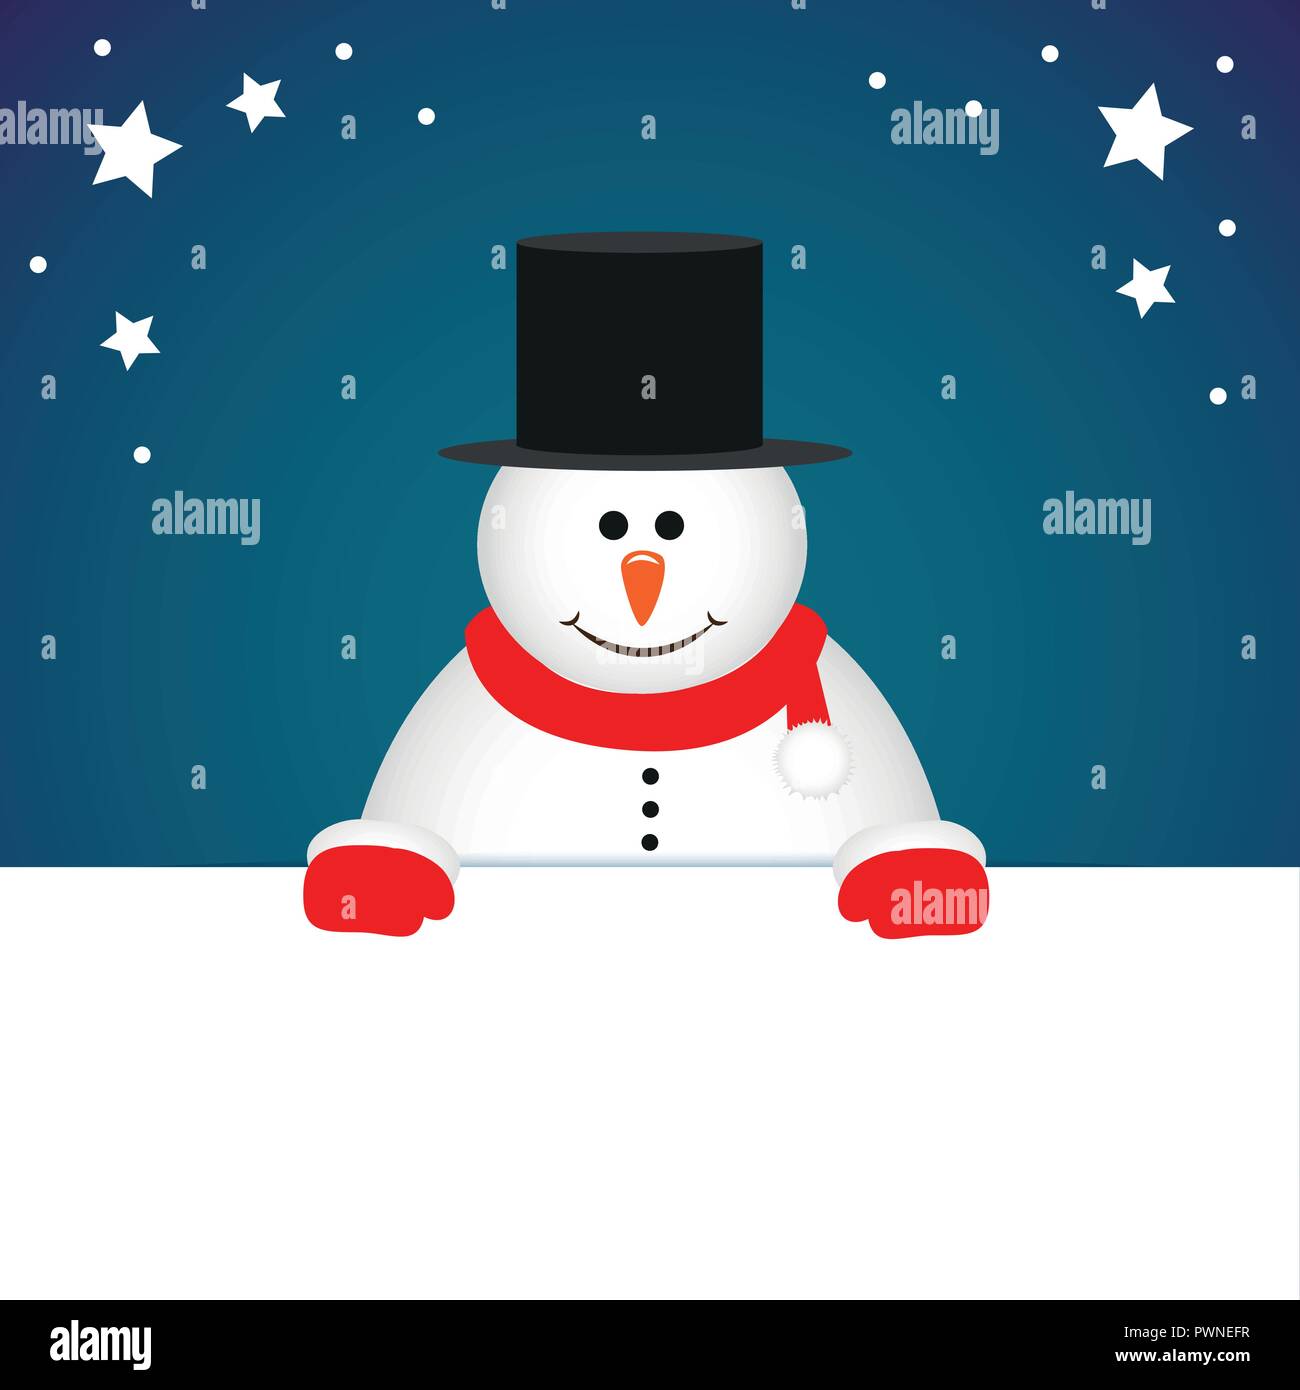 Cute snowman cartoon tarjeta navideña ilustración vectorial EPS10 Ilustración del Vector